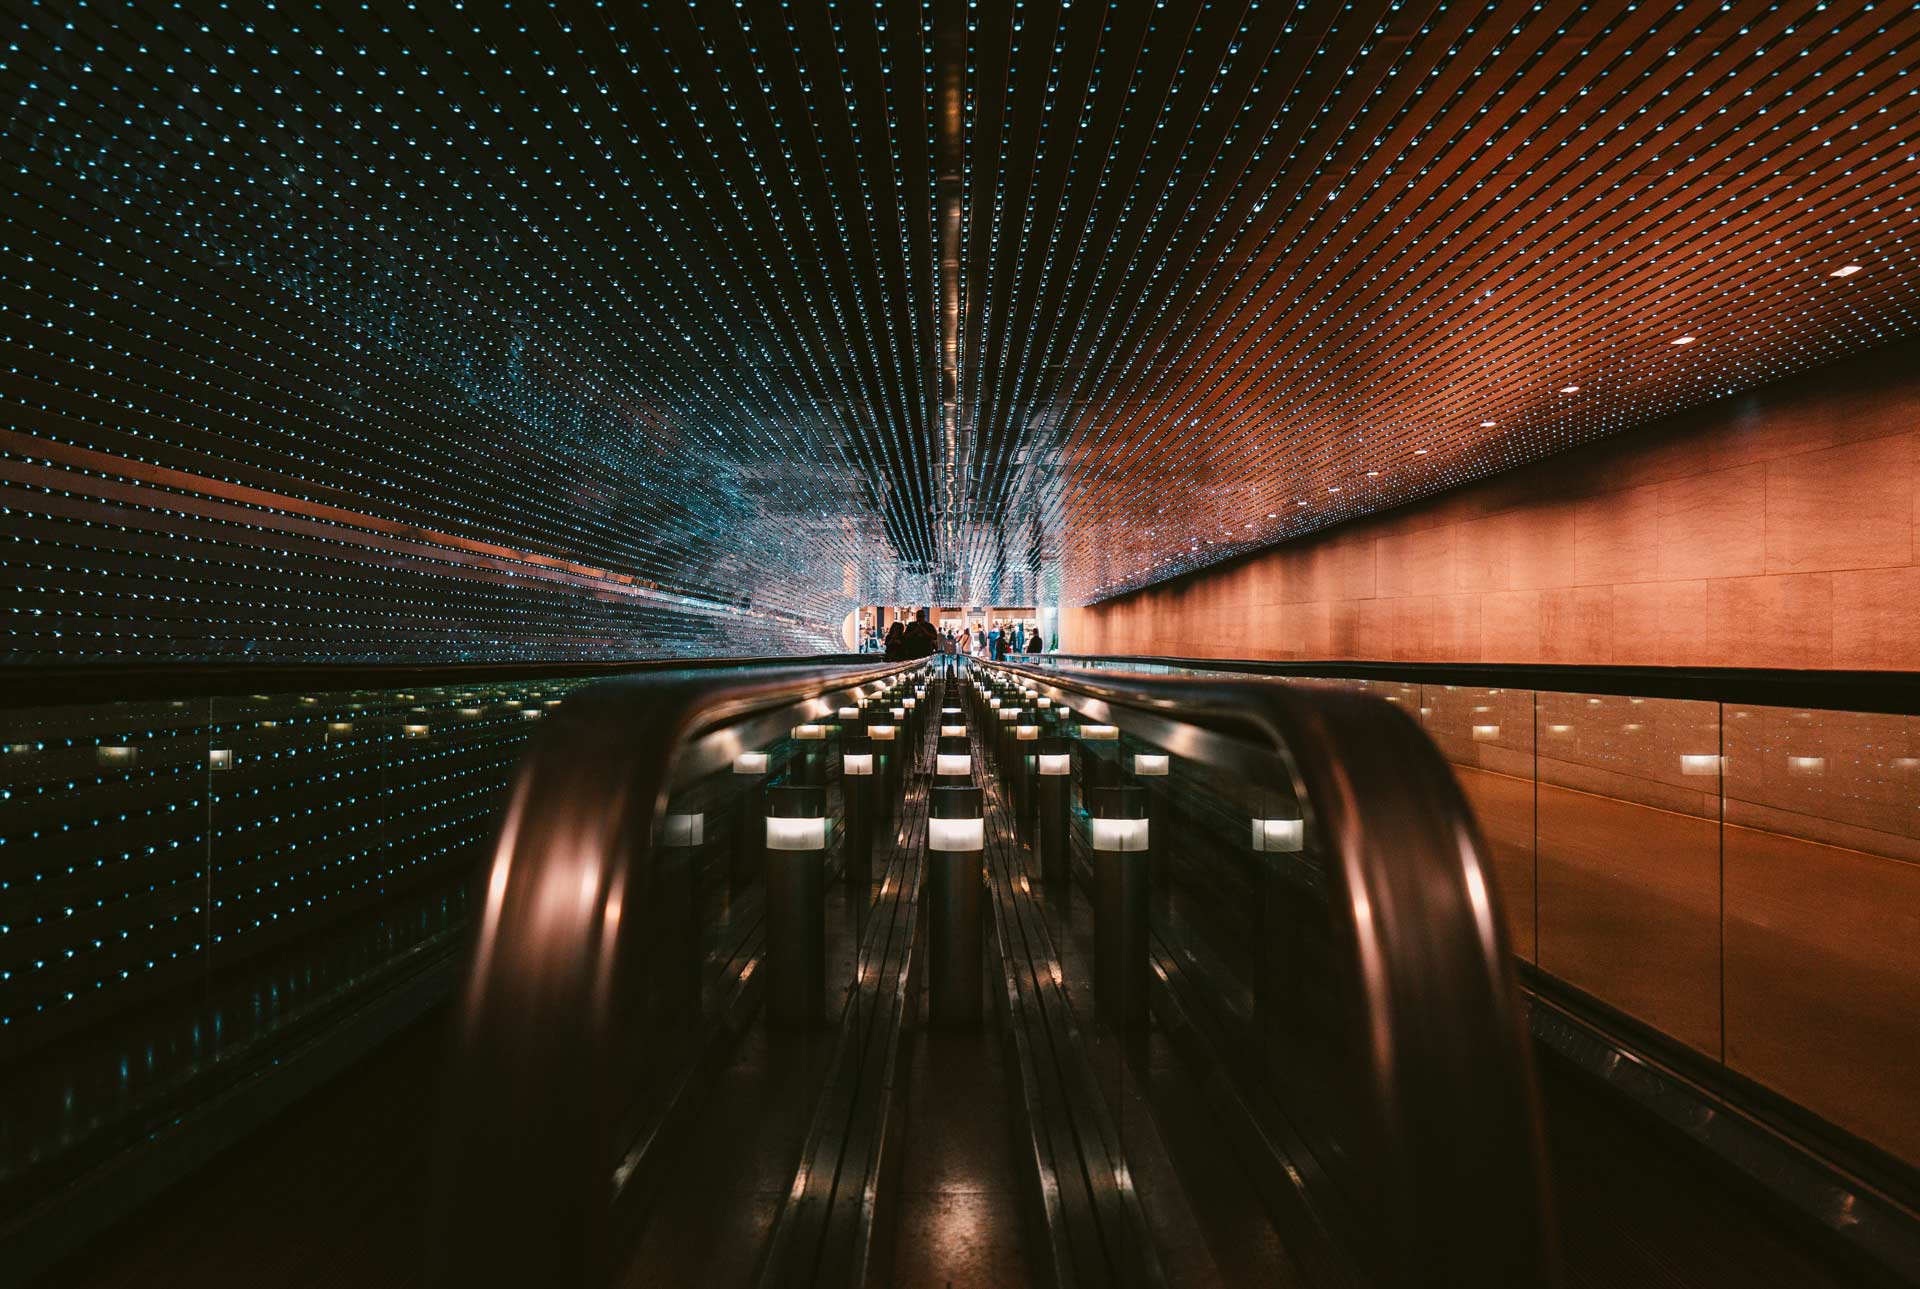 City Center Metro